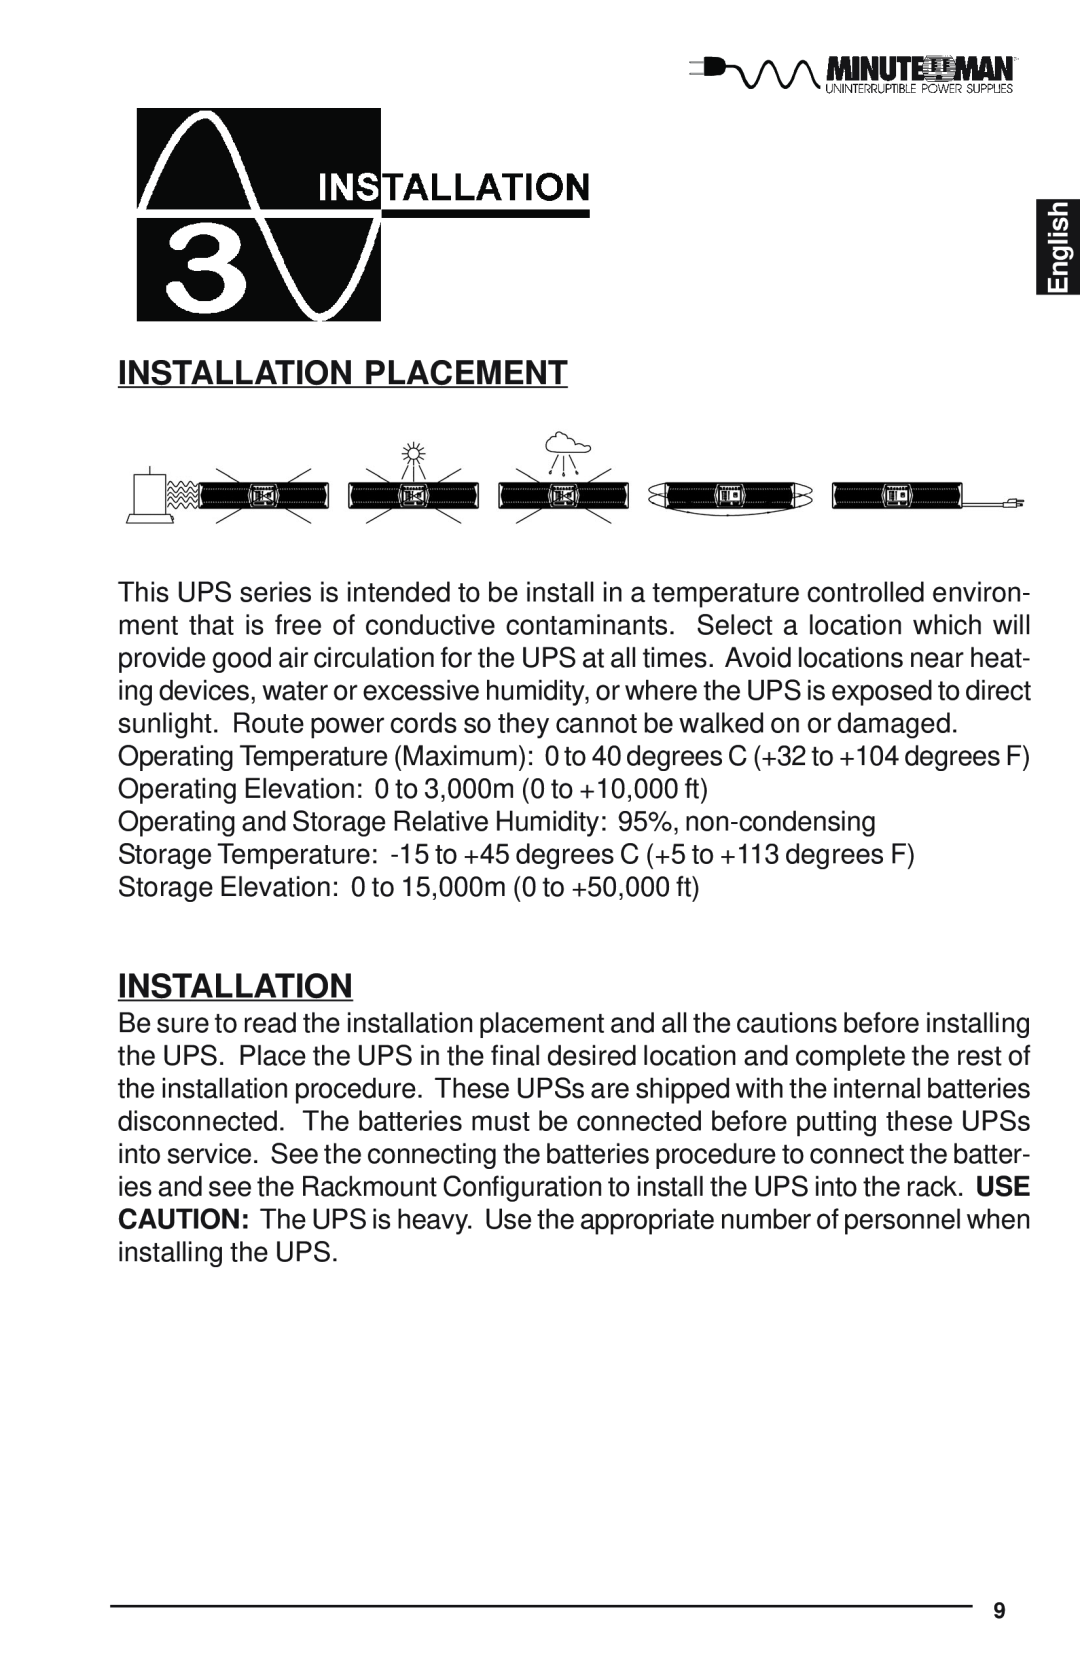 Minuteman UPS Enterprise Plus Series user manual Installation Placement, English 